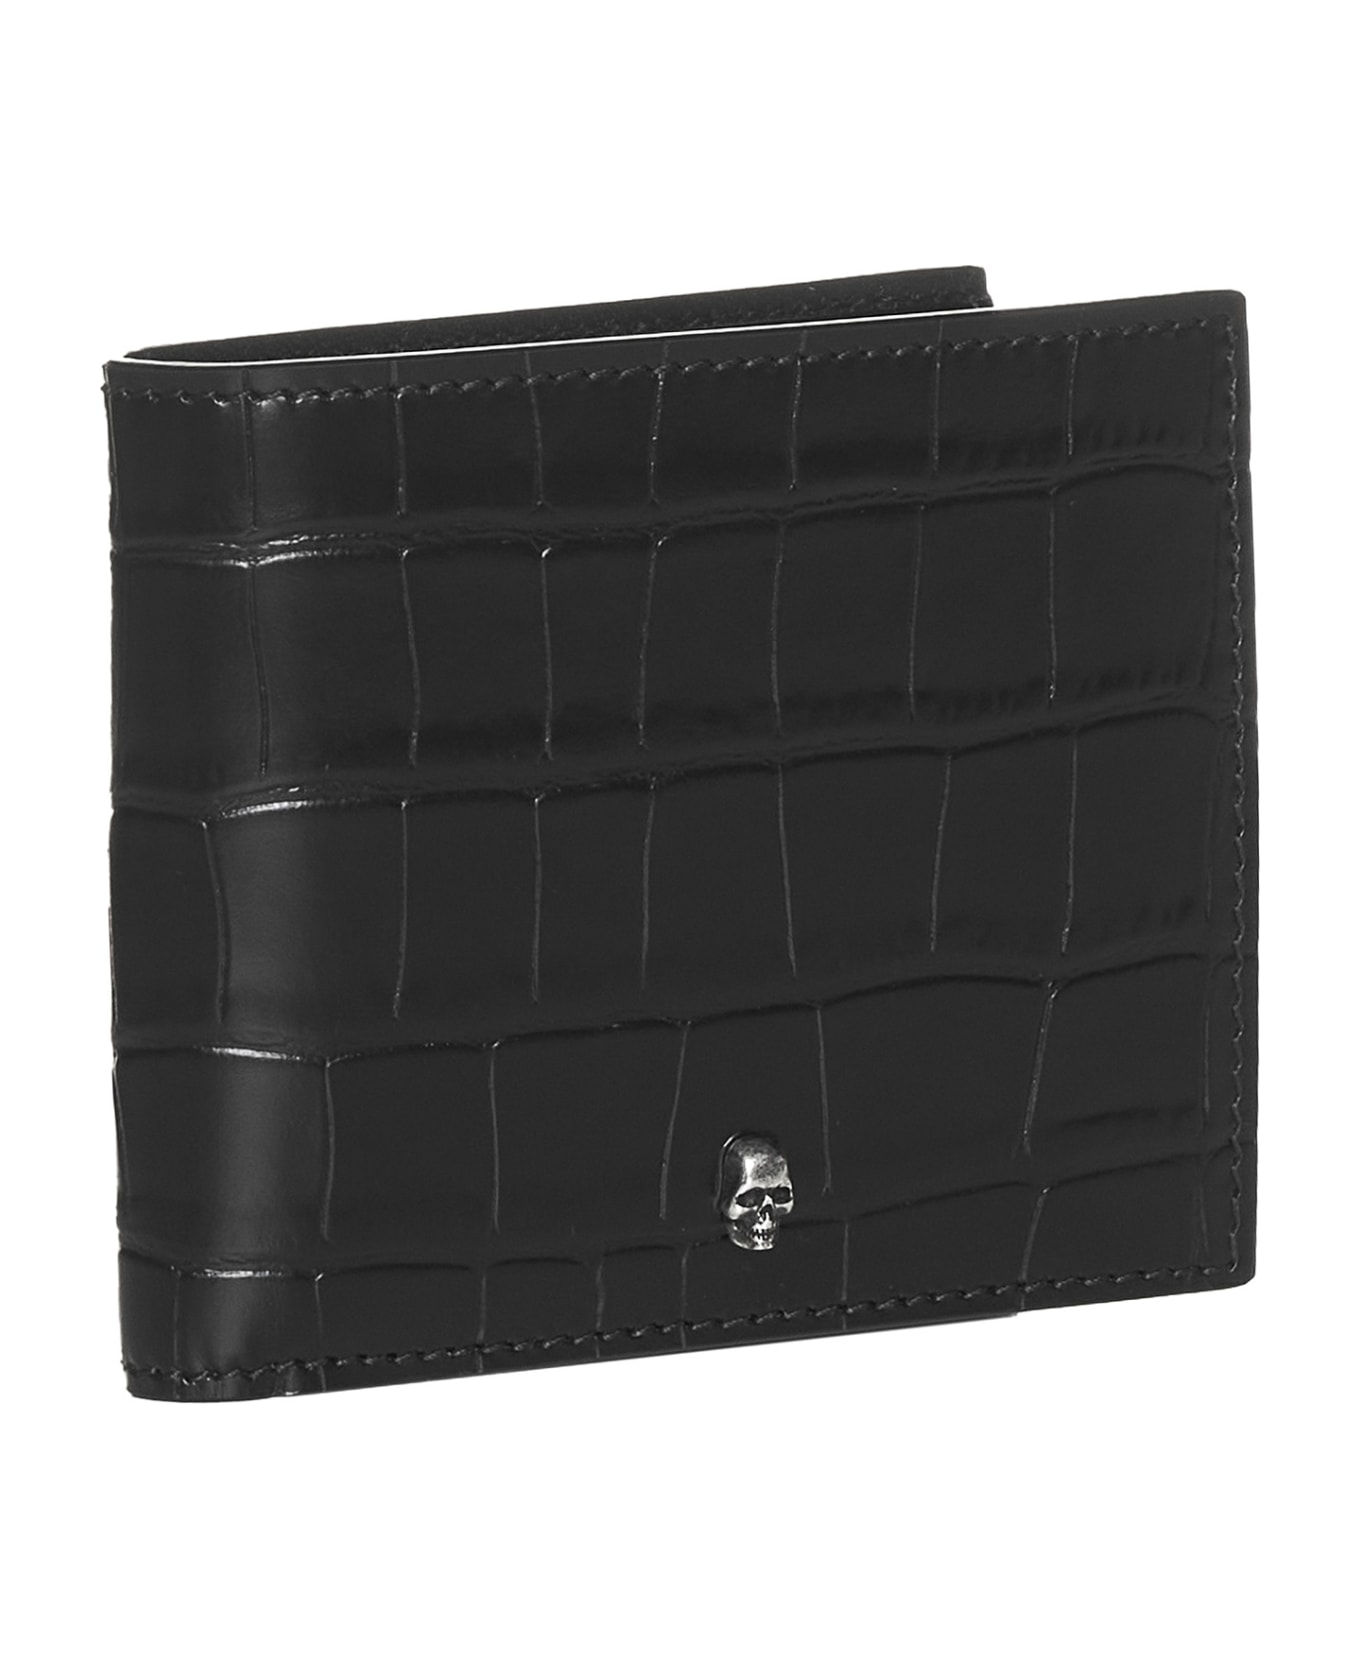 Alexander McQueen Leather Wallet - black 財布